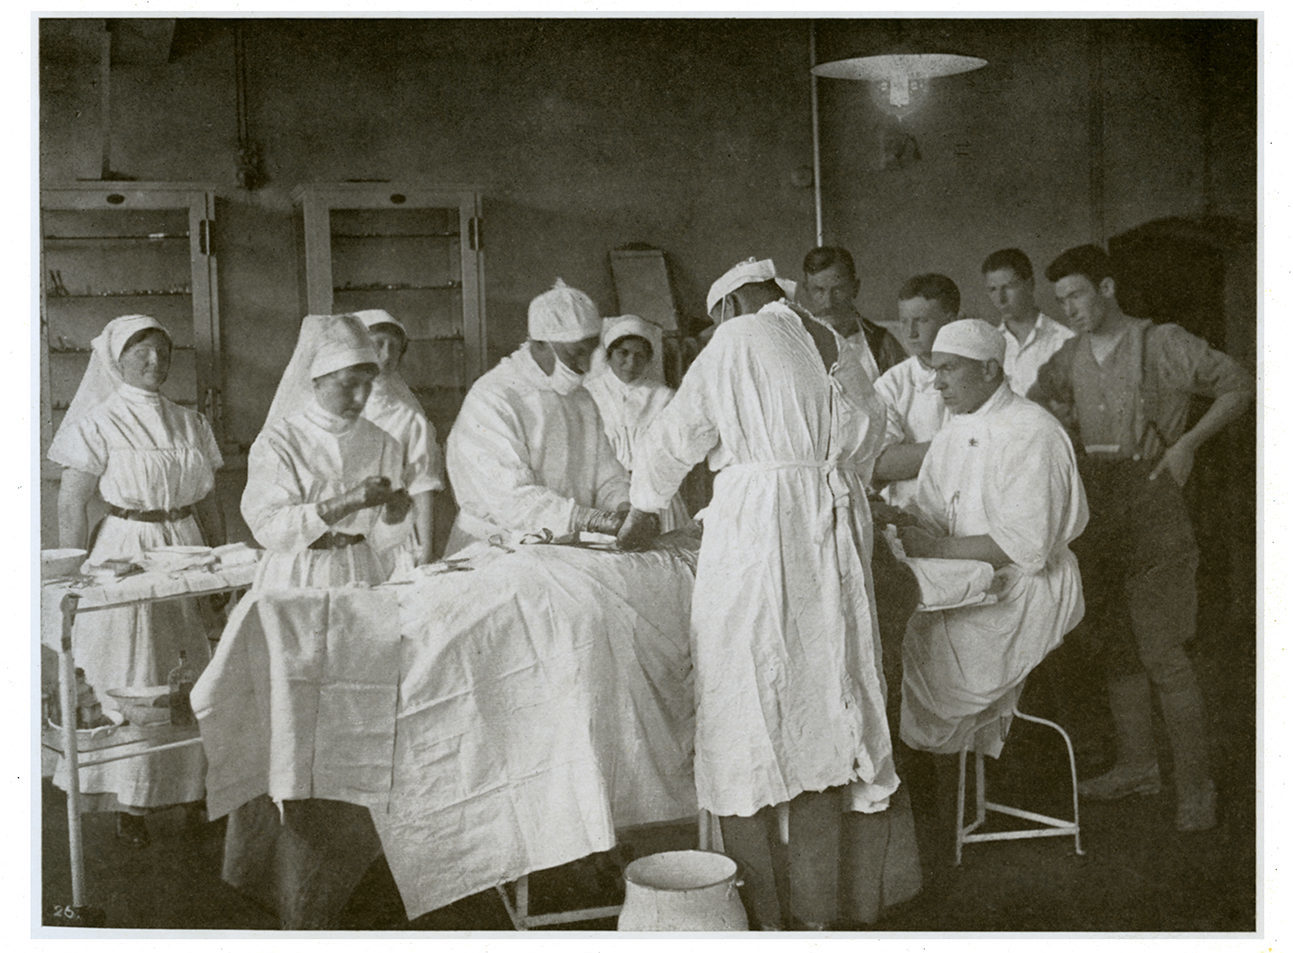 Chirurgie en cours dans une étable reconvertie à Boulogne, c. 1915-17. De A.H. Pirie, Views Illustrating Life and Scenes in the Hospital, 1923. Collection du Centre des arts et du patrimoine du CUSM